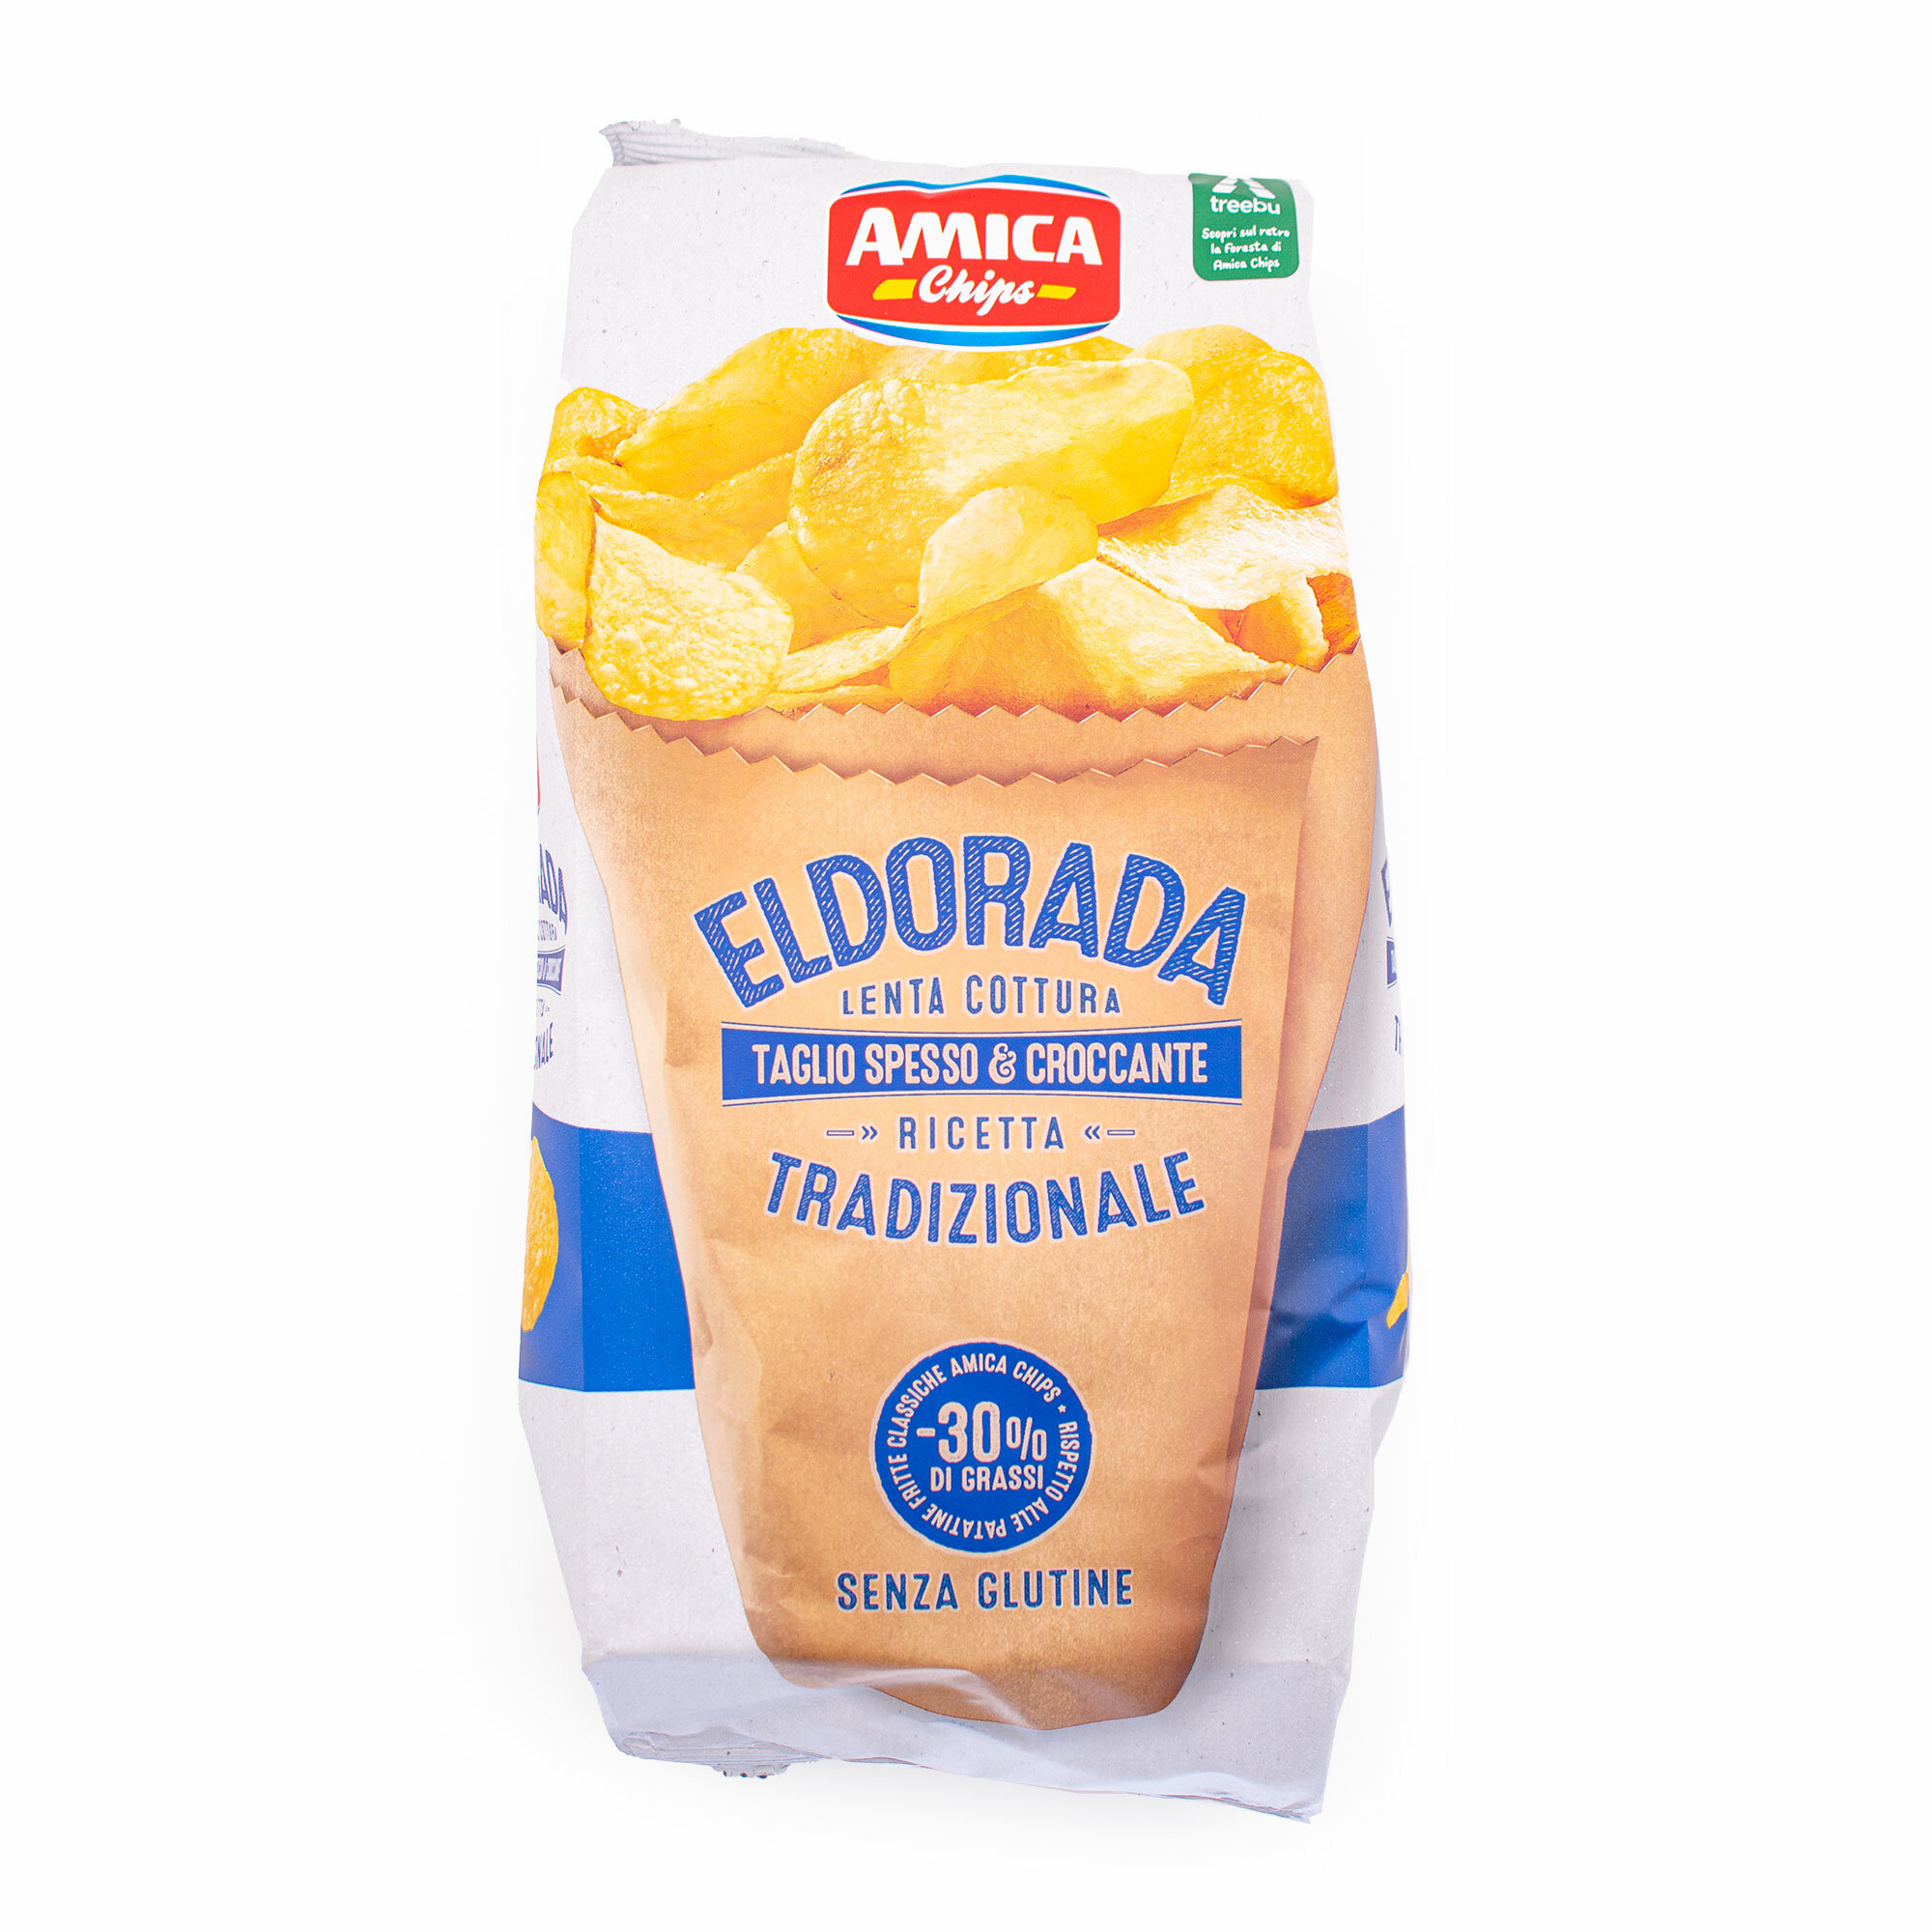 Чипсы традиционные с пониженным содержанием жира (-30%) ELDORADA, ТМ AMICA CHIPS, 0,13 кг